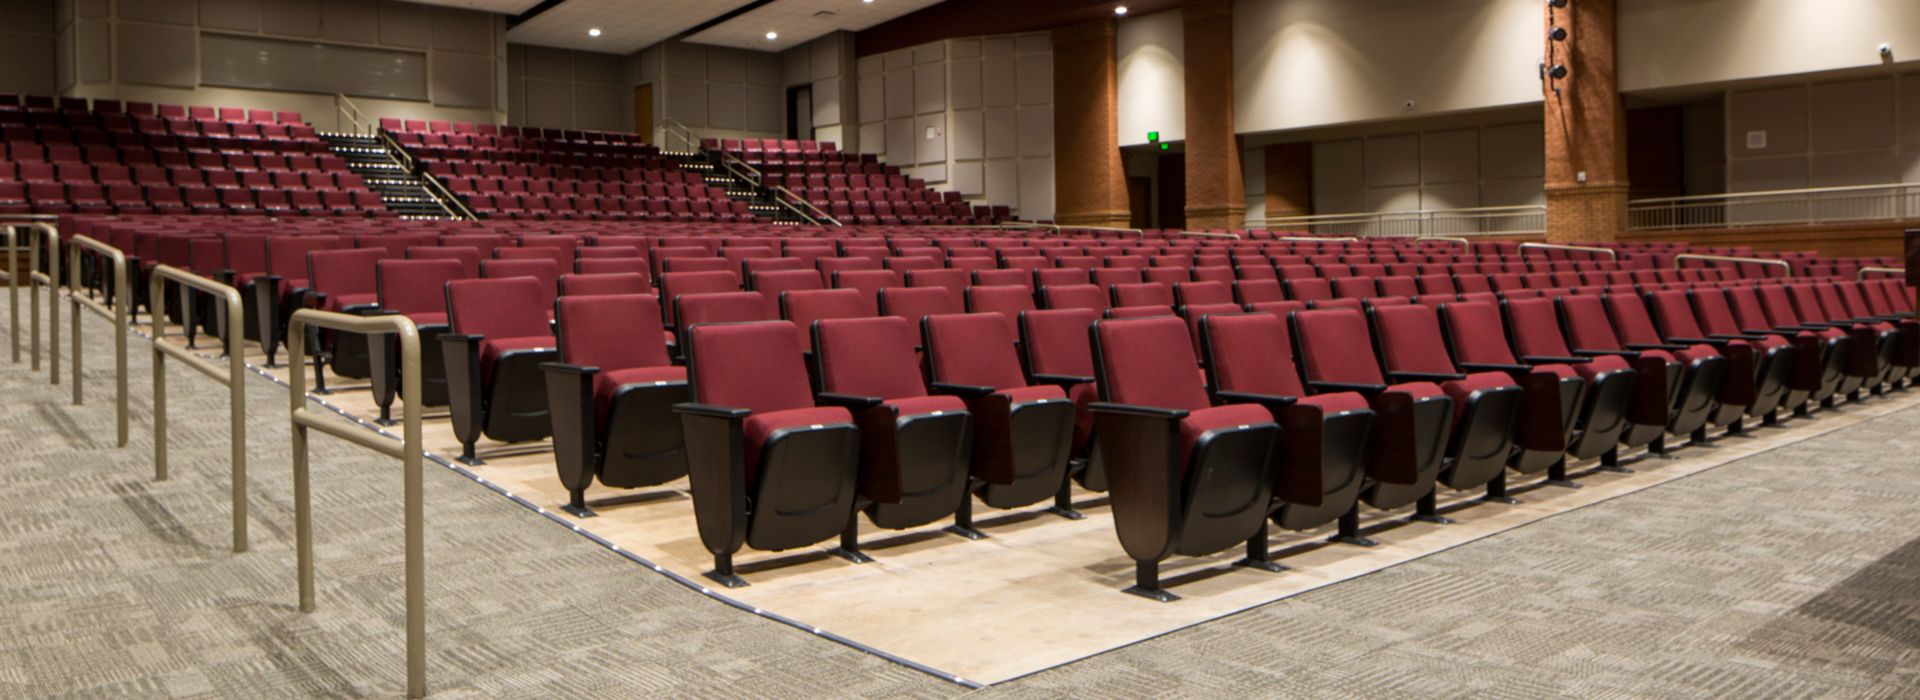 Interface CT101 carpet tile in auditorium